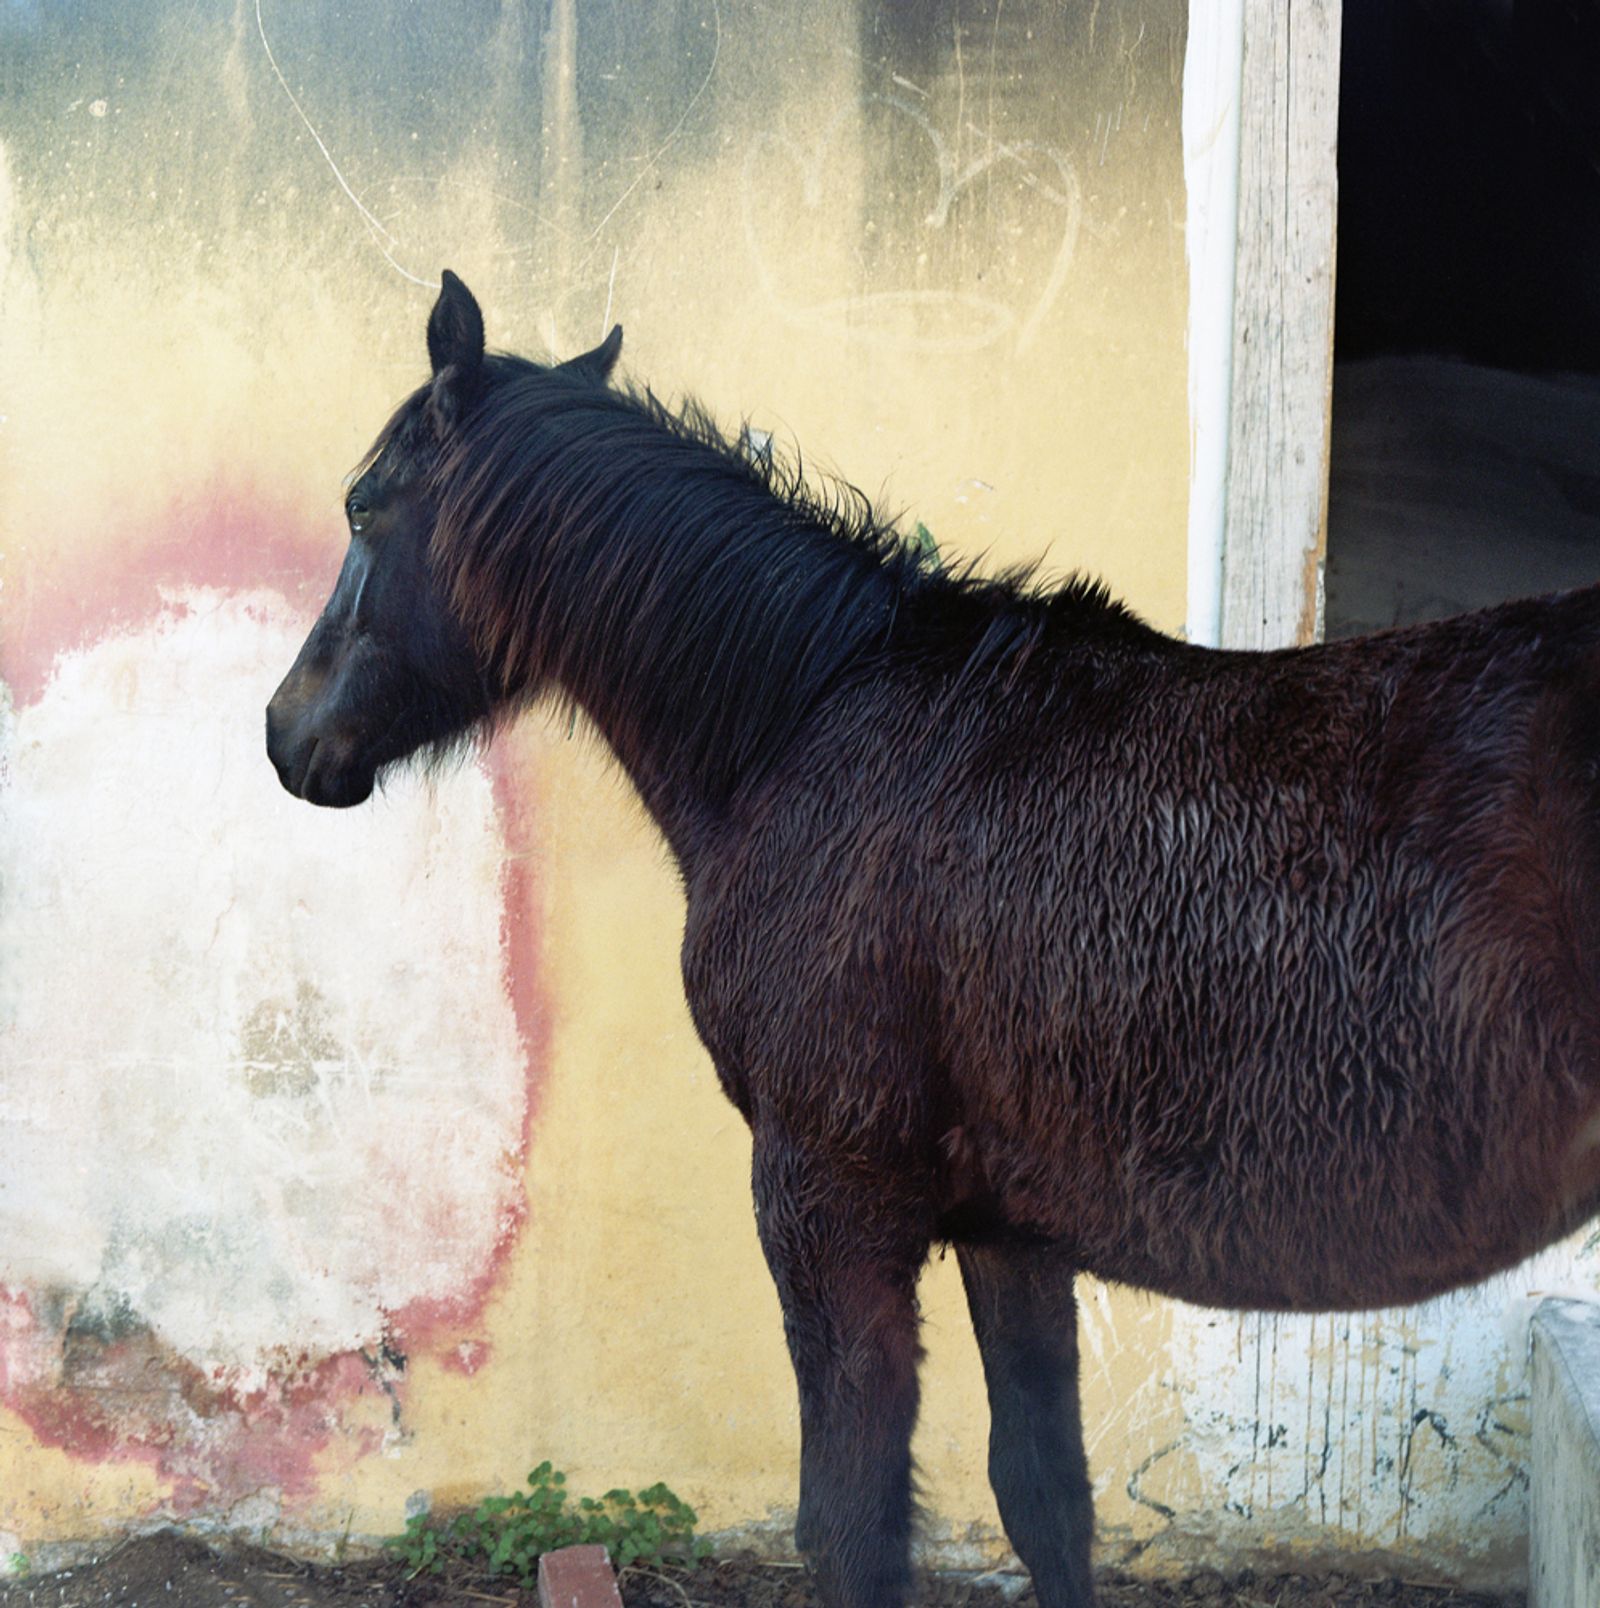 © Ioanna Sakellaraki - Image from the Aidos photography project